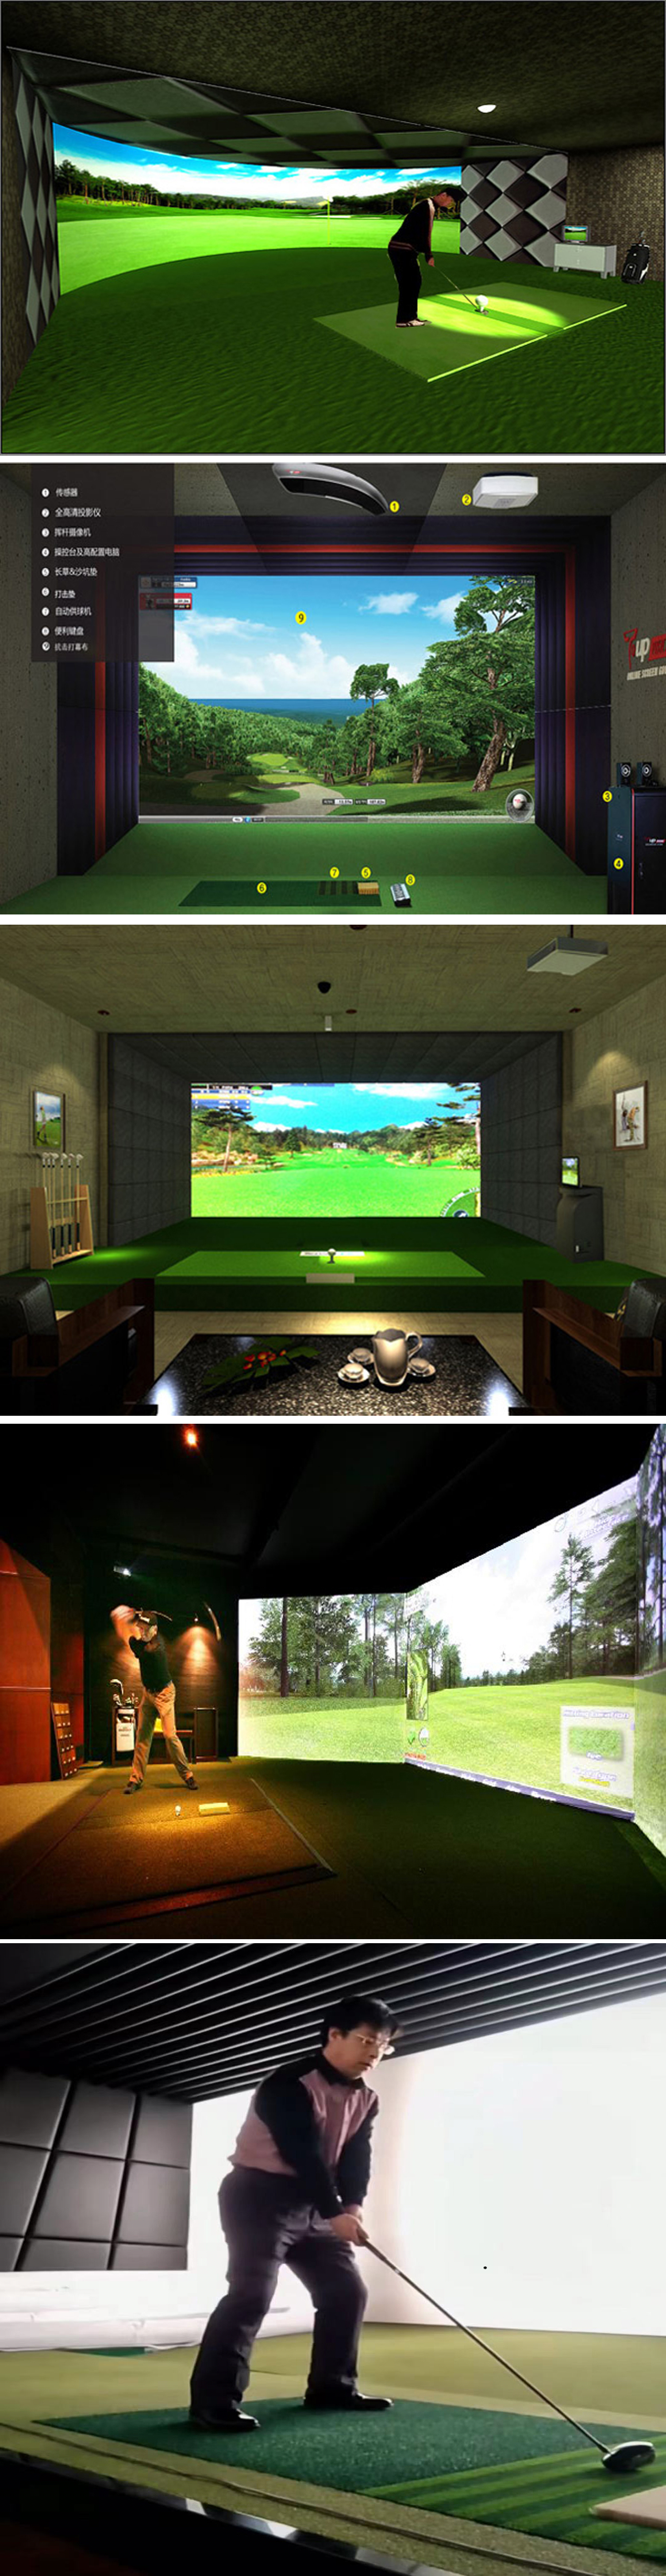 高尔夫模拟器设备软件.jpg